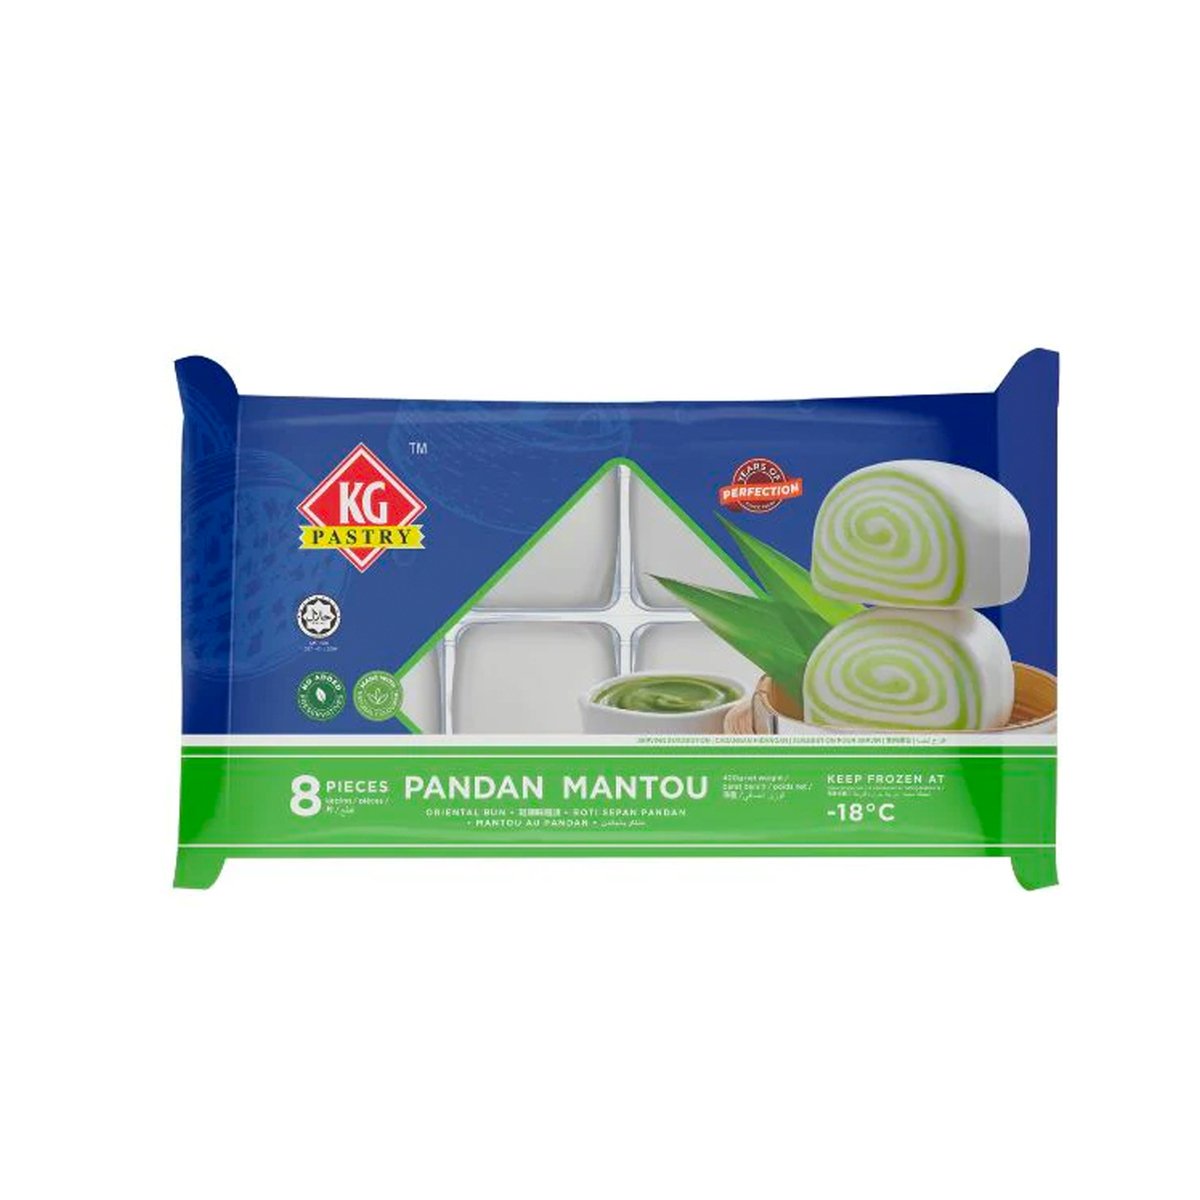 KG Pastry Mantou Pandan 400g(8 Pieces)